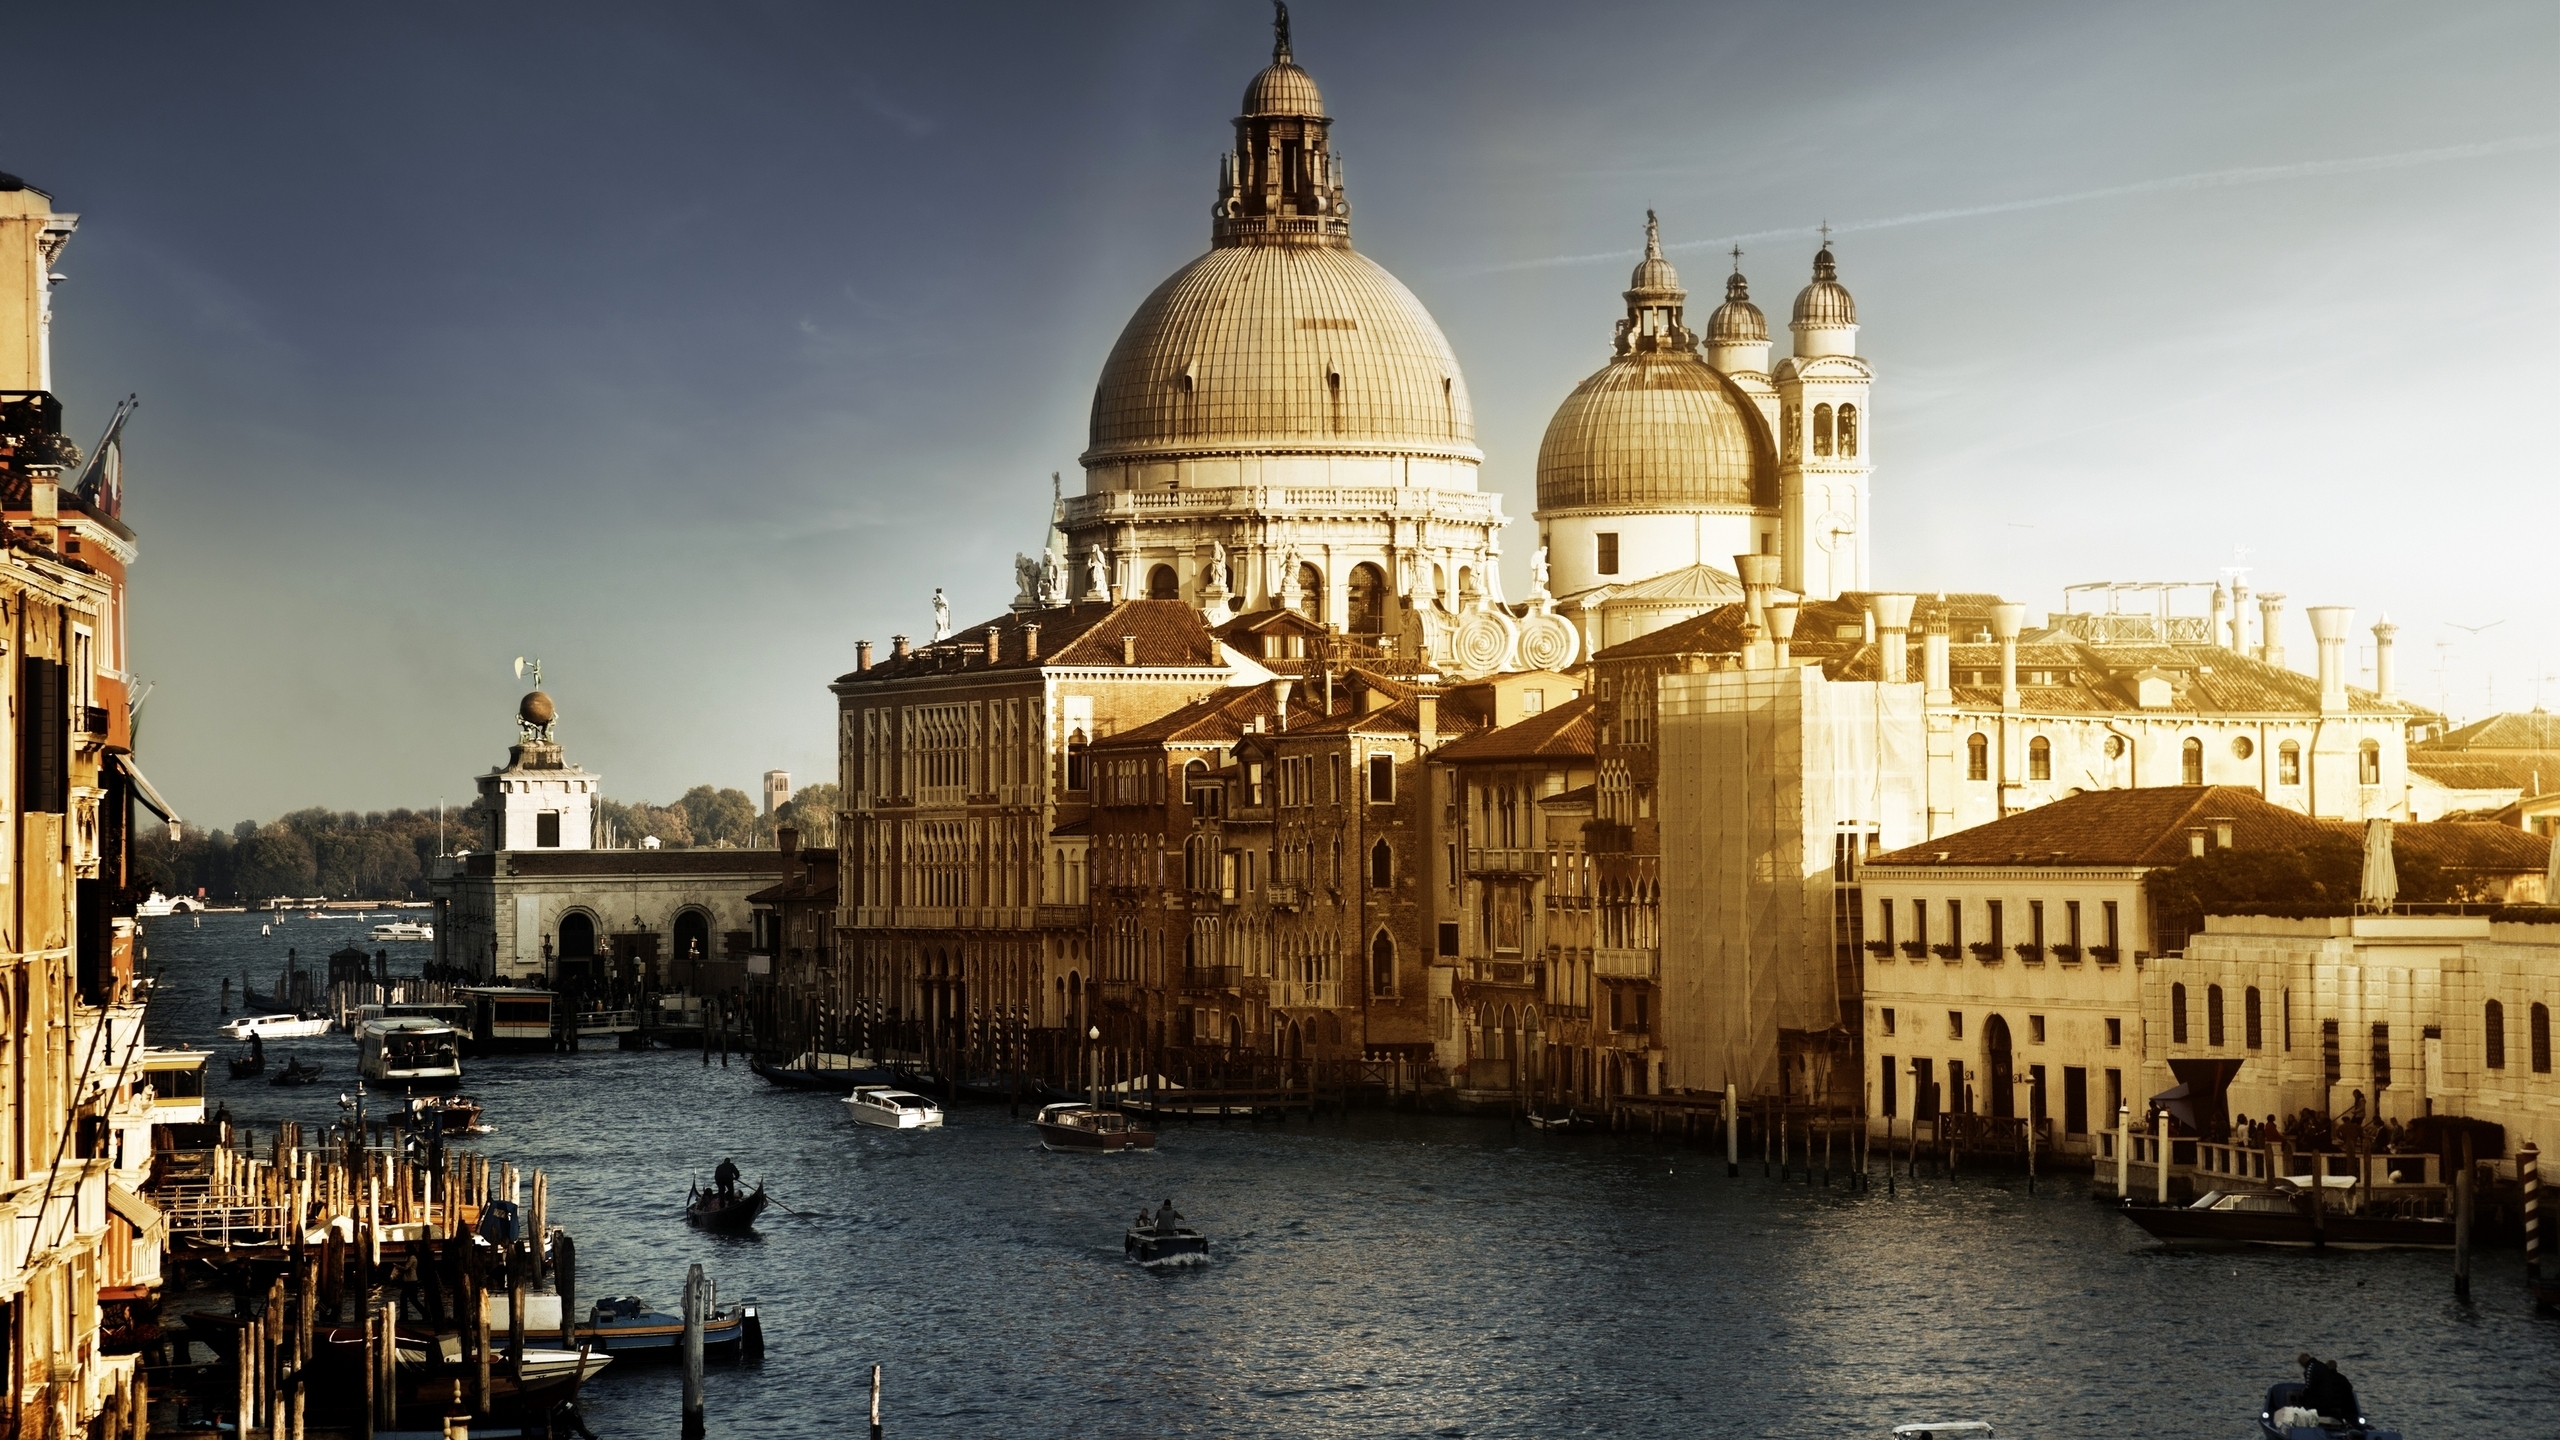 Lovely Venice City Corner for 2560x1440 HDTV resolution